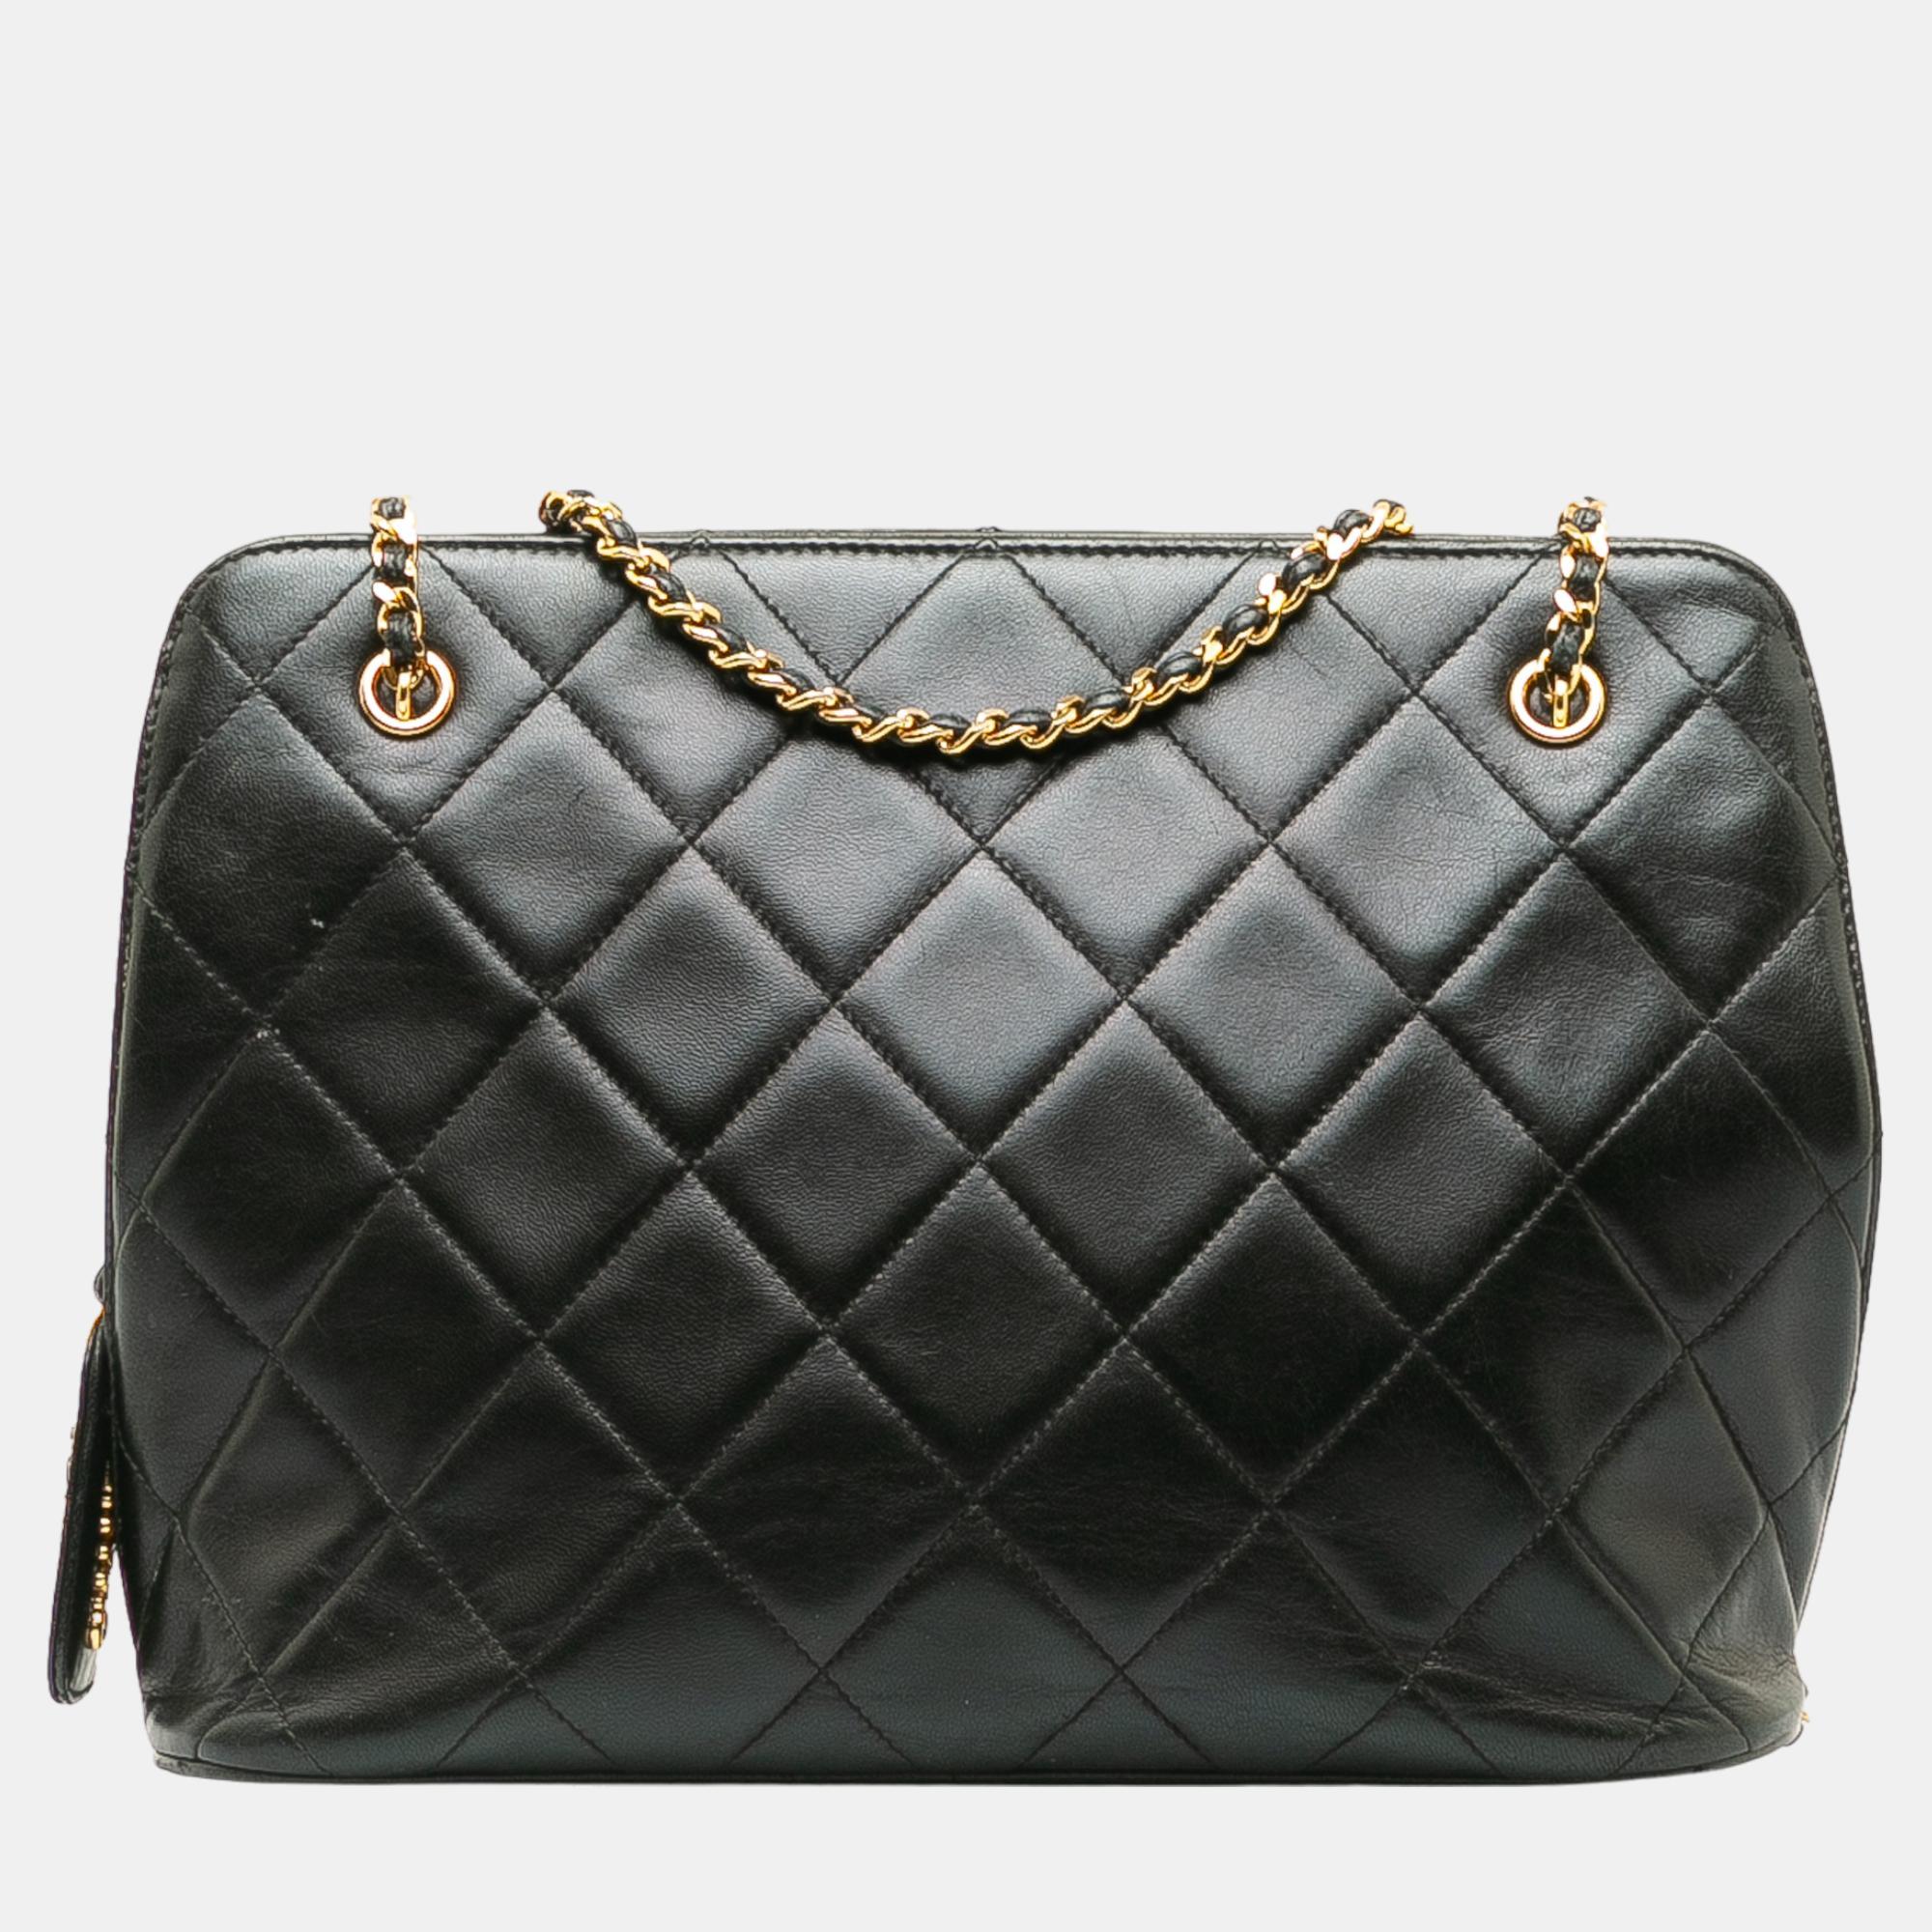 

Chanel Black Matelasse Lambskin Leather Shoulder Bag